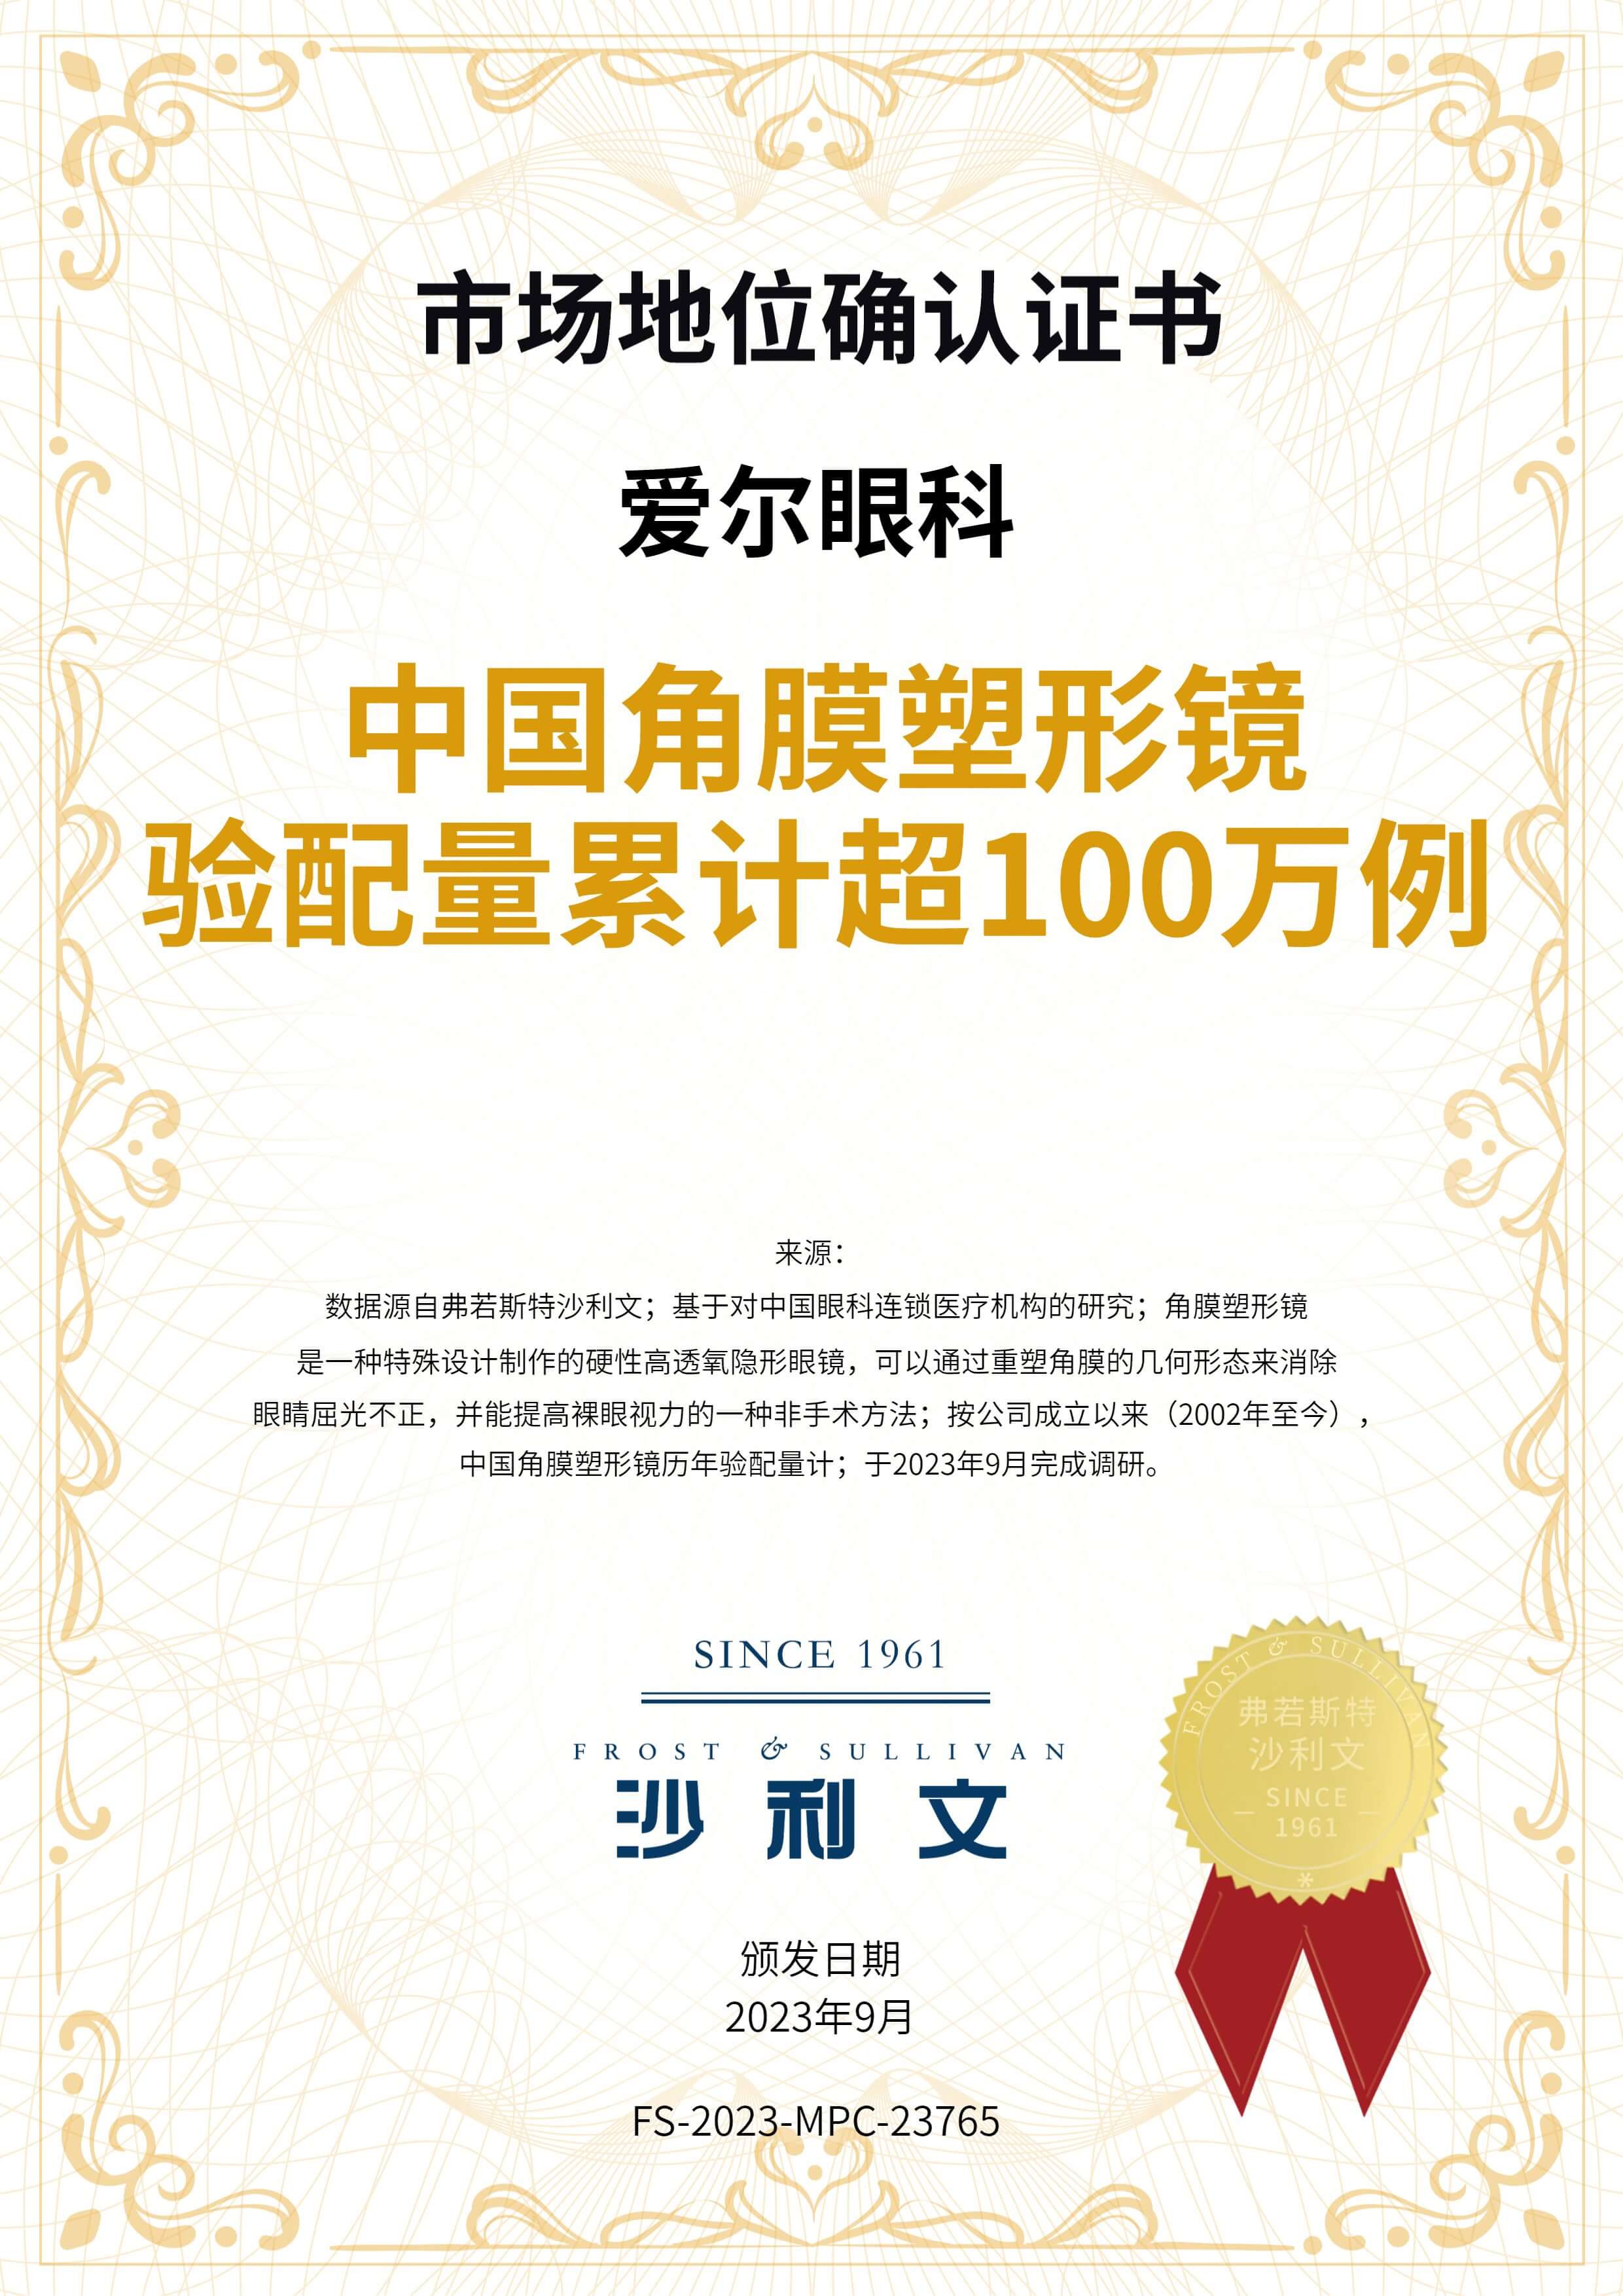 沙利文授予爱尔眼科“中国角膜塑形镜验配量累计超100万例”市场地位确认证书